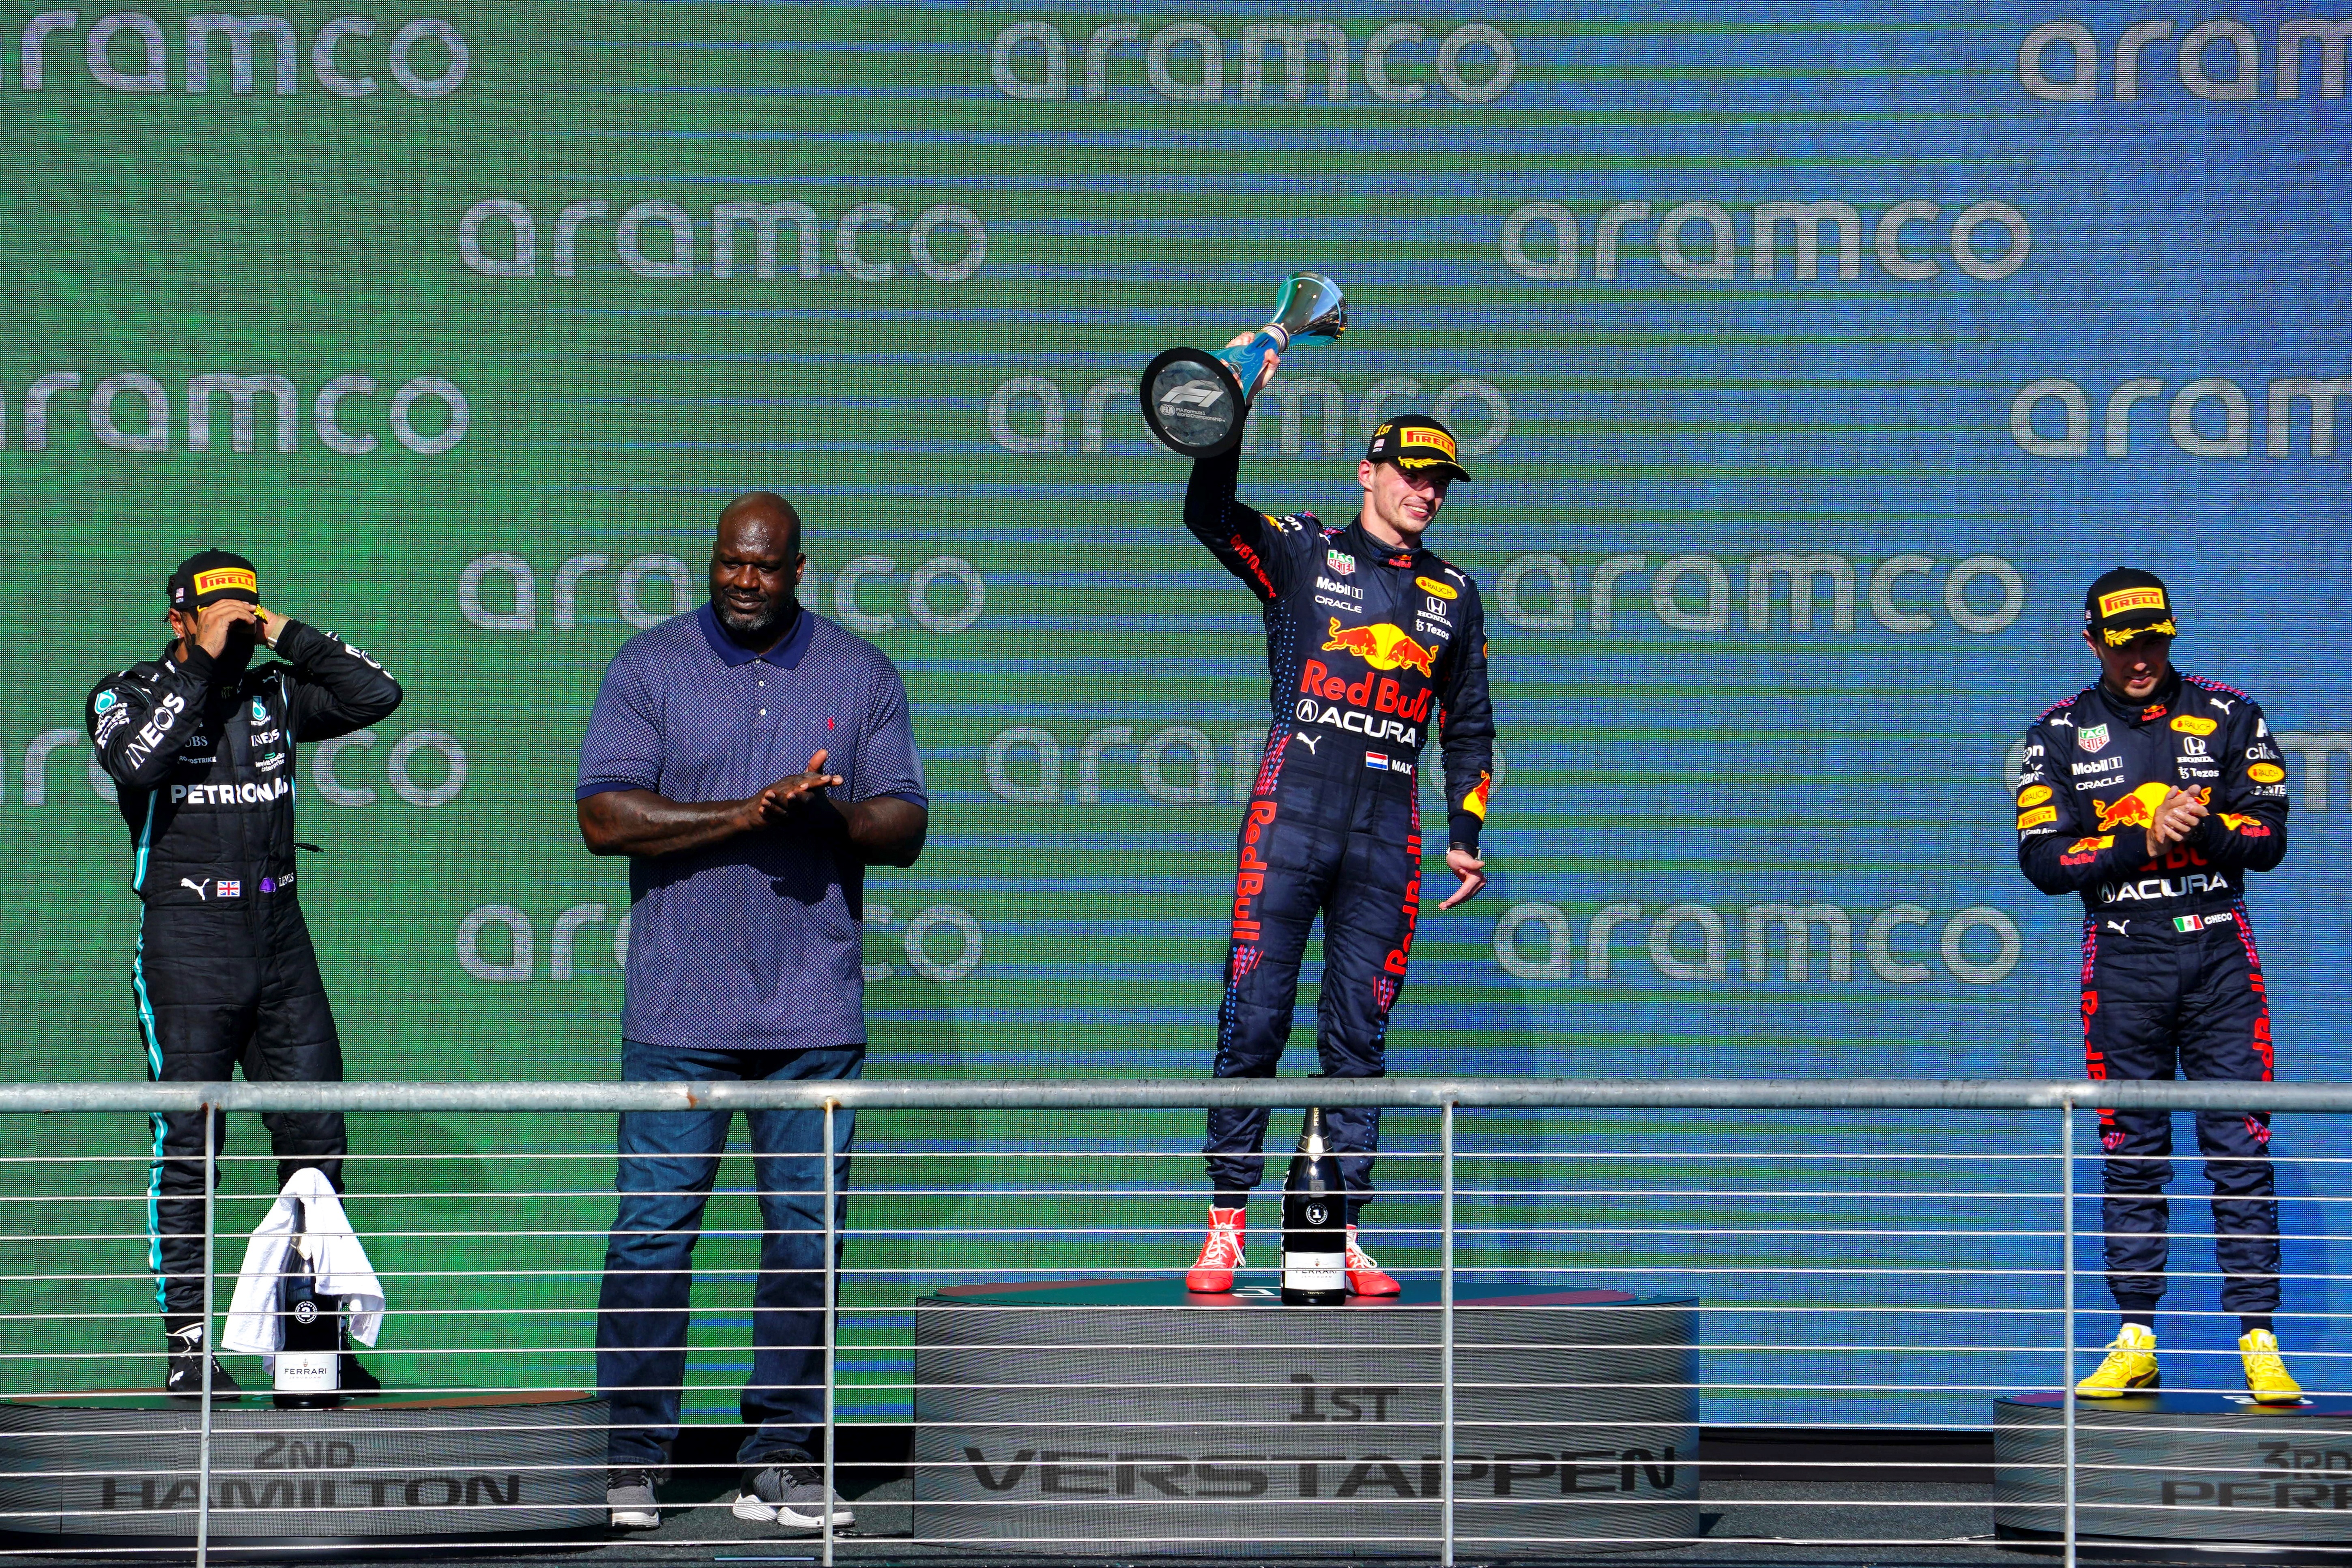 El piloto neerlandés de F1 Max Verstappen de Red Bull Racing, junto al británico Lewis Hamilton (izquierda) de Mercedes-AMG Petronas, el mexicano Sergio Perez (derecha) de Red Bull Racing y el exjugador de la NBA, Shaquille O'Neal durante la premiación del Formula One Grand Prix de los Estados Unidos. (Foto Prensa Libre: EFE)